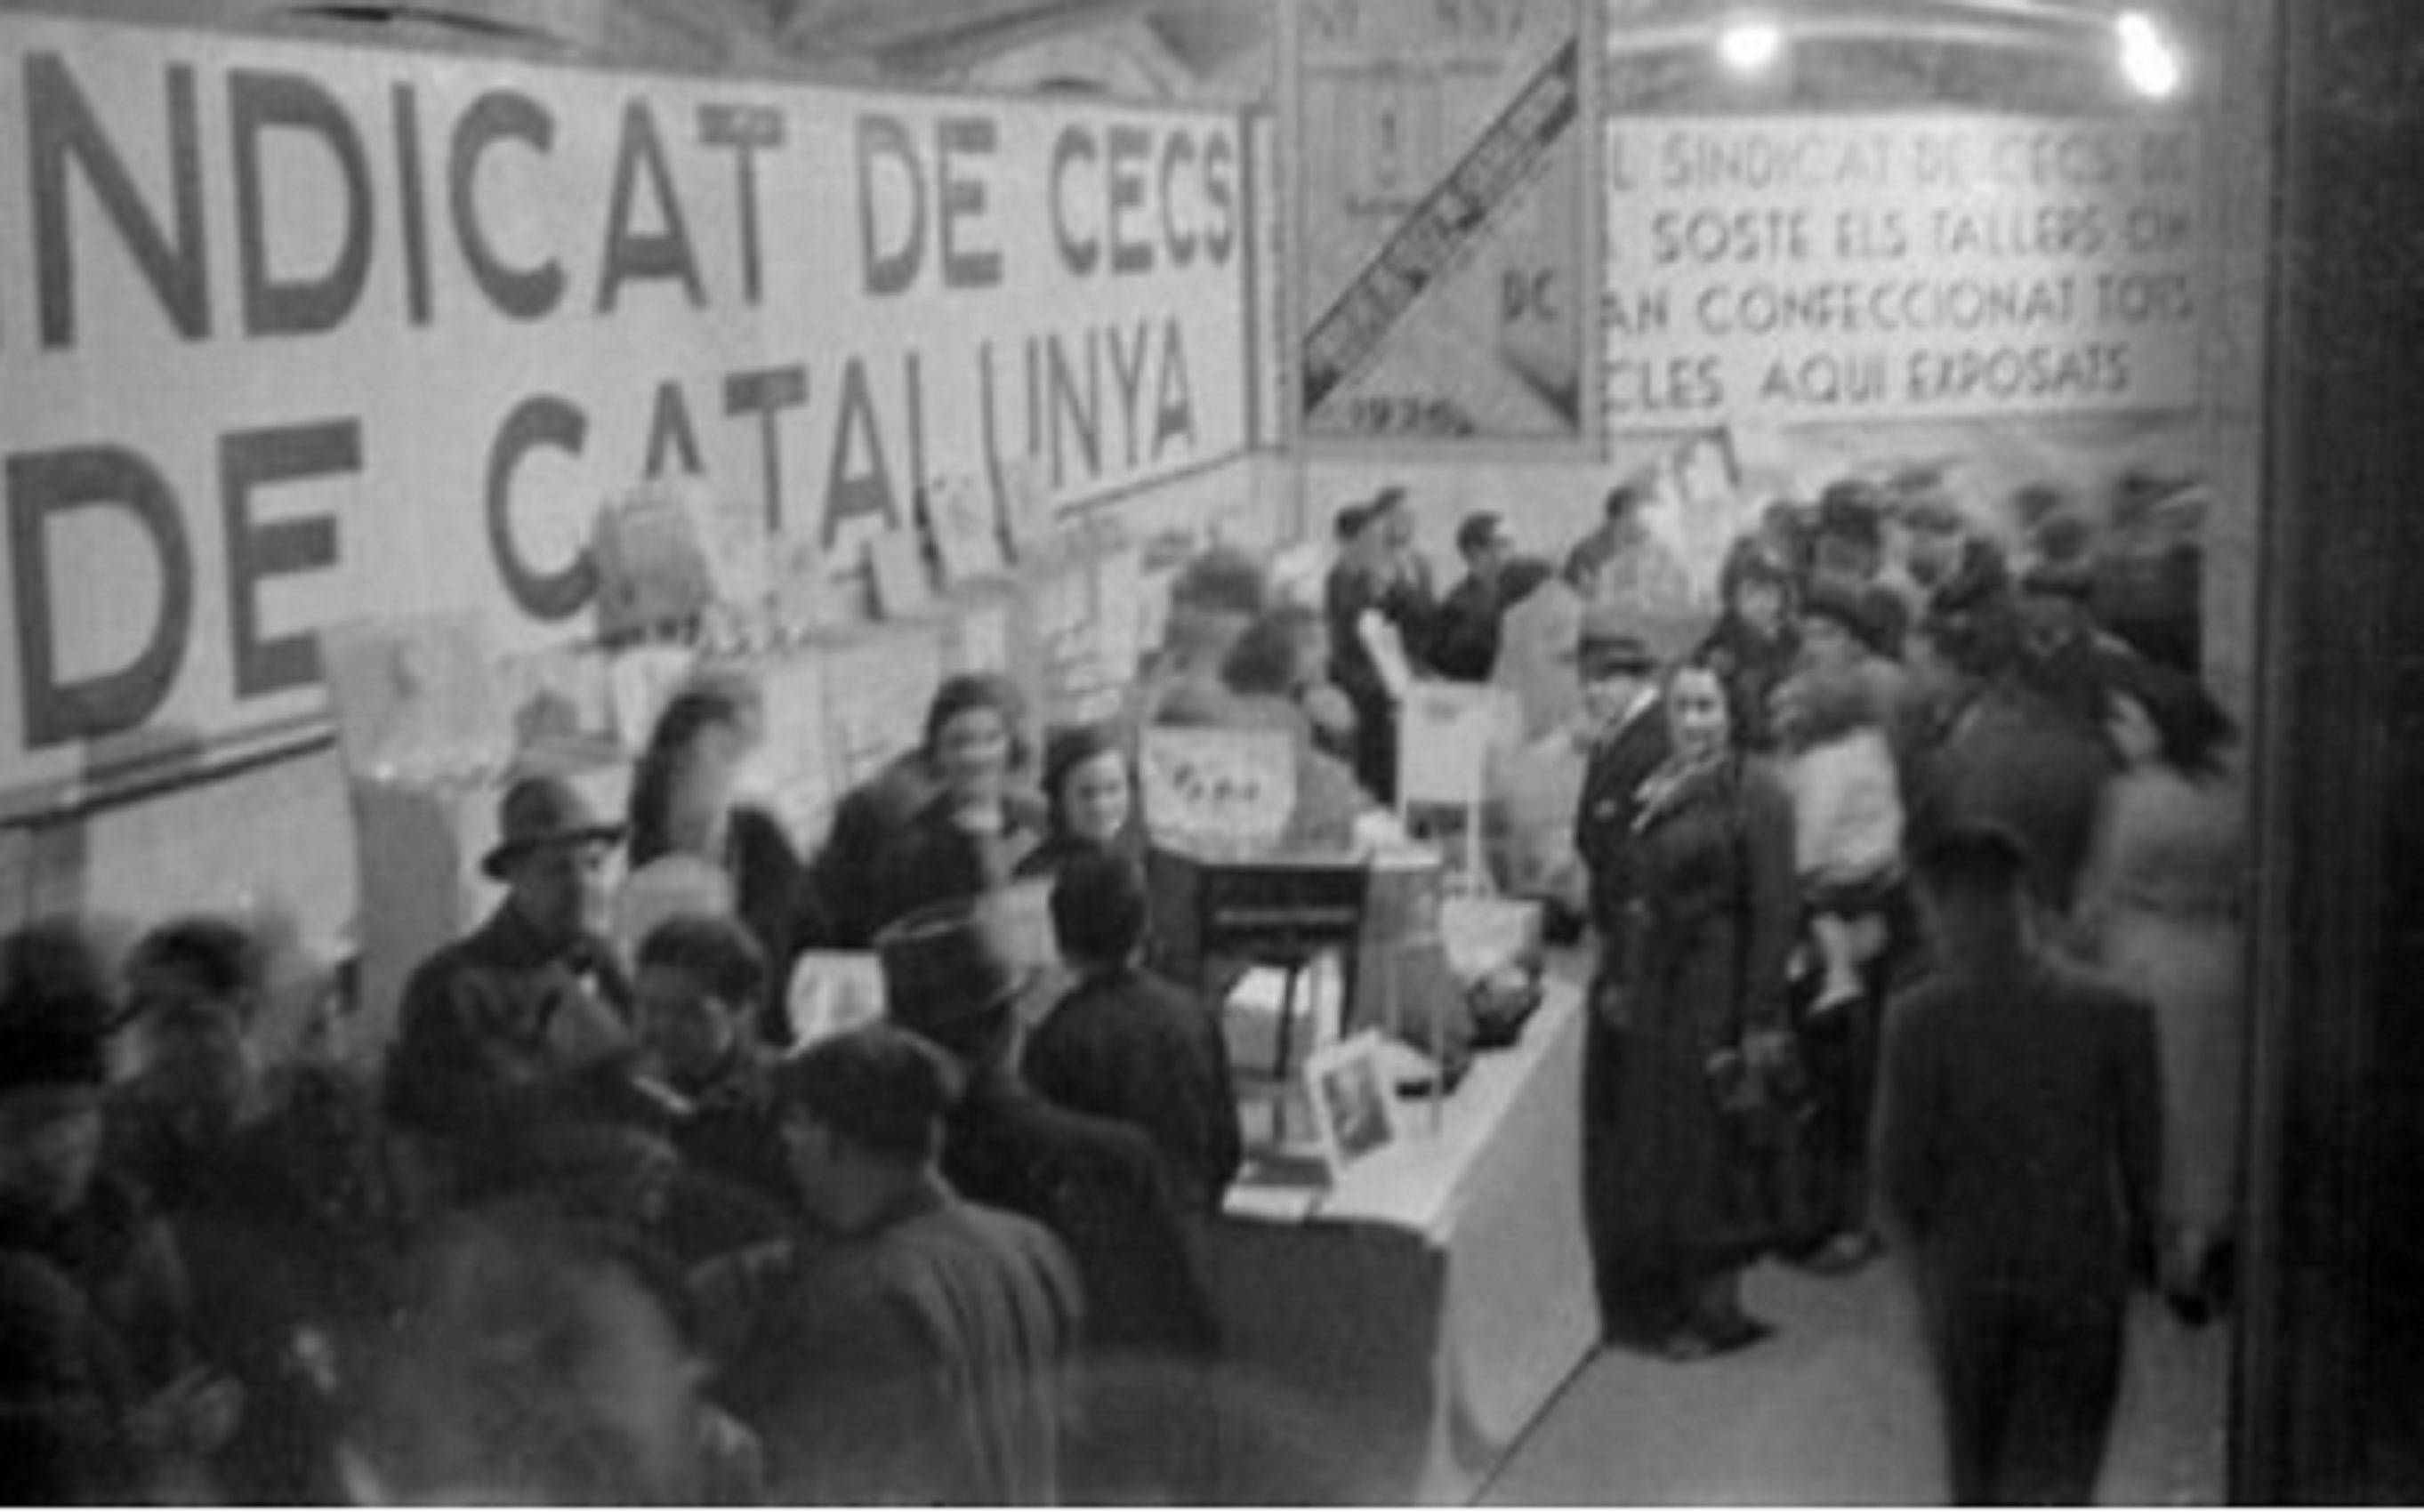 La República espanyola empresona Roc Boronat, fundador del Sindicat de Cecs de Catalunya